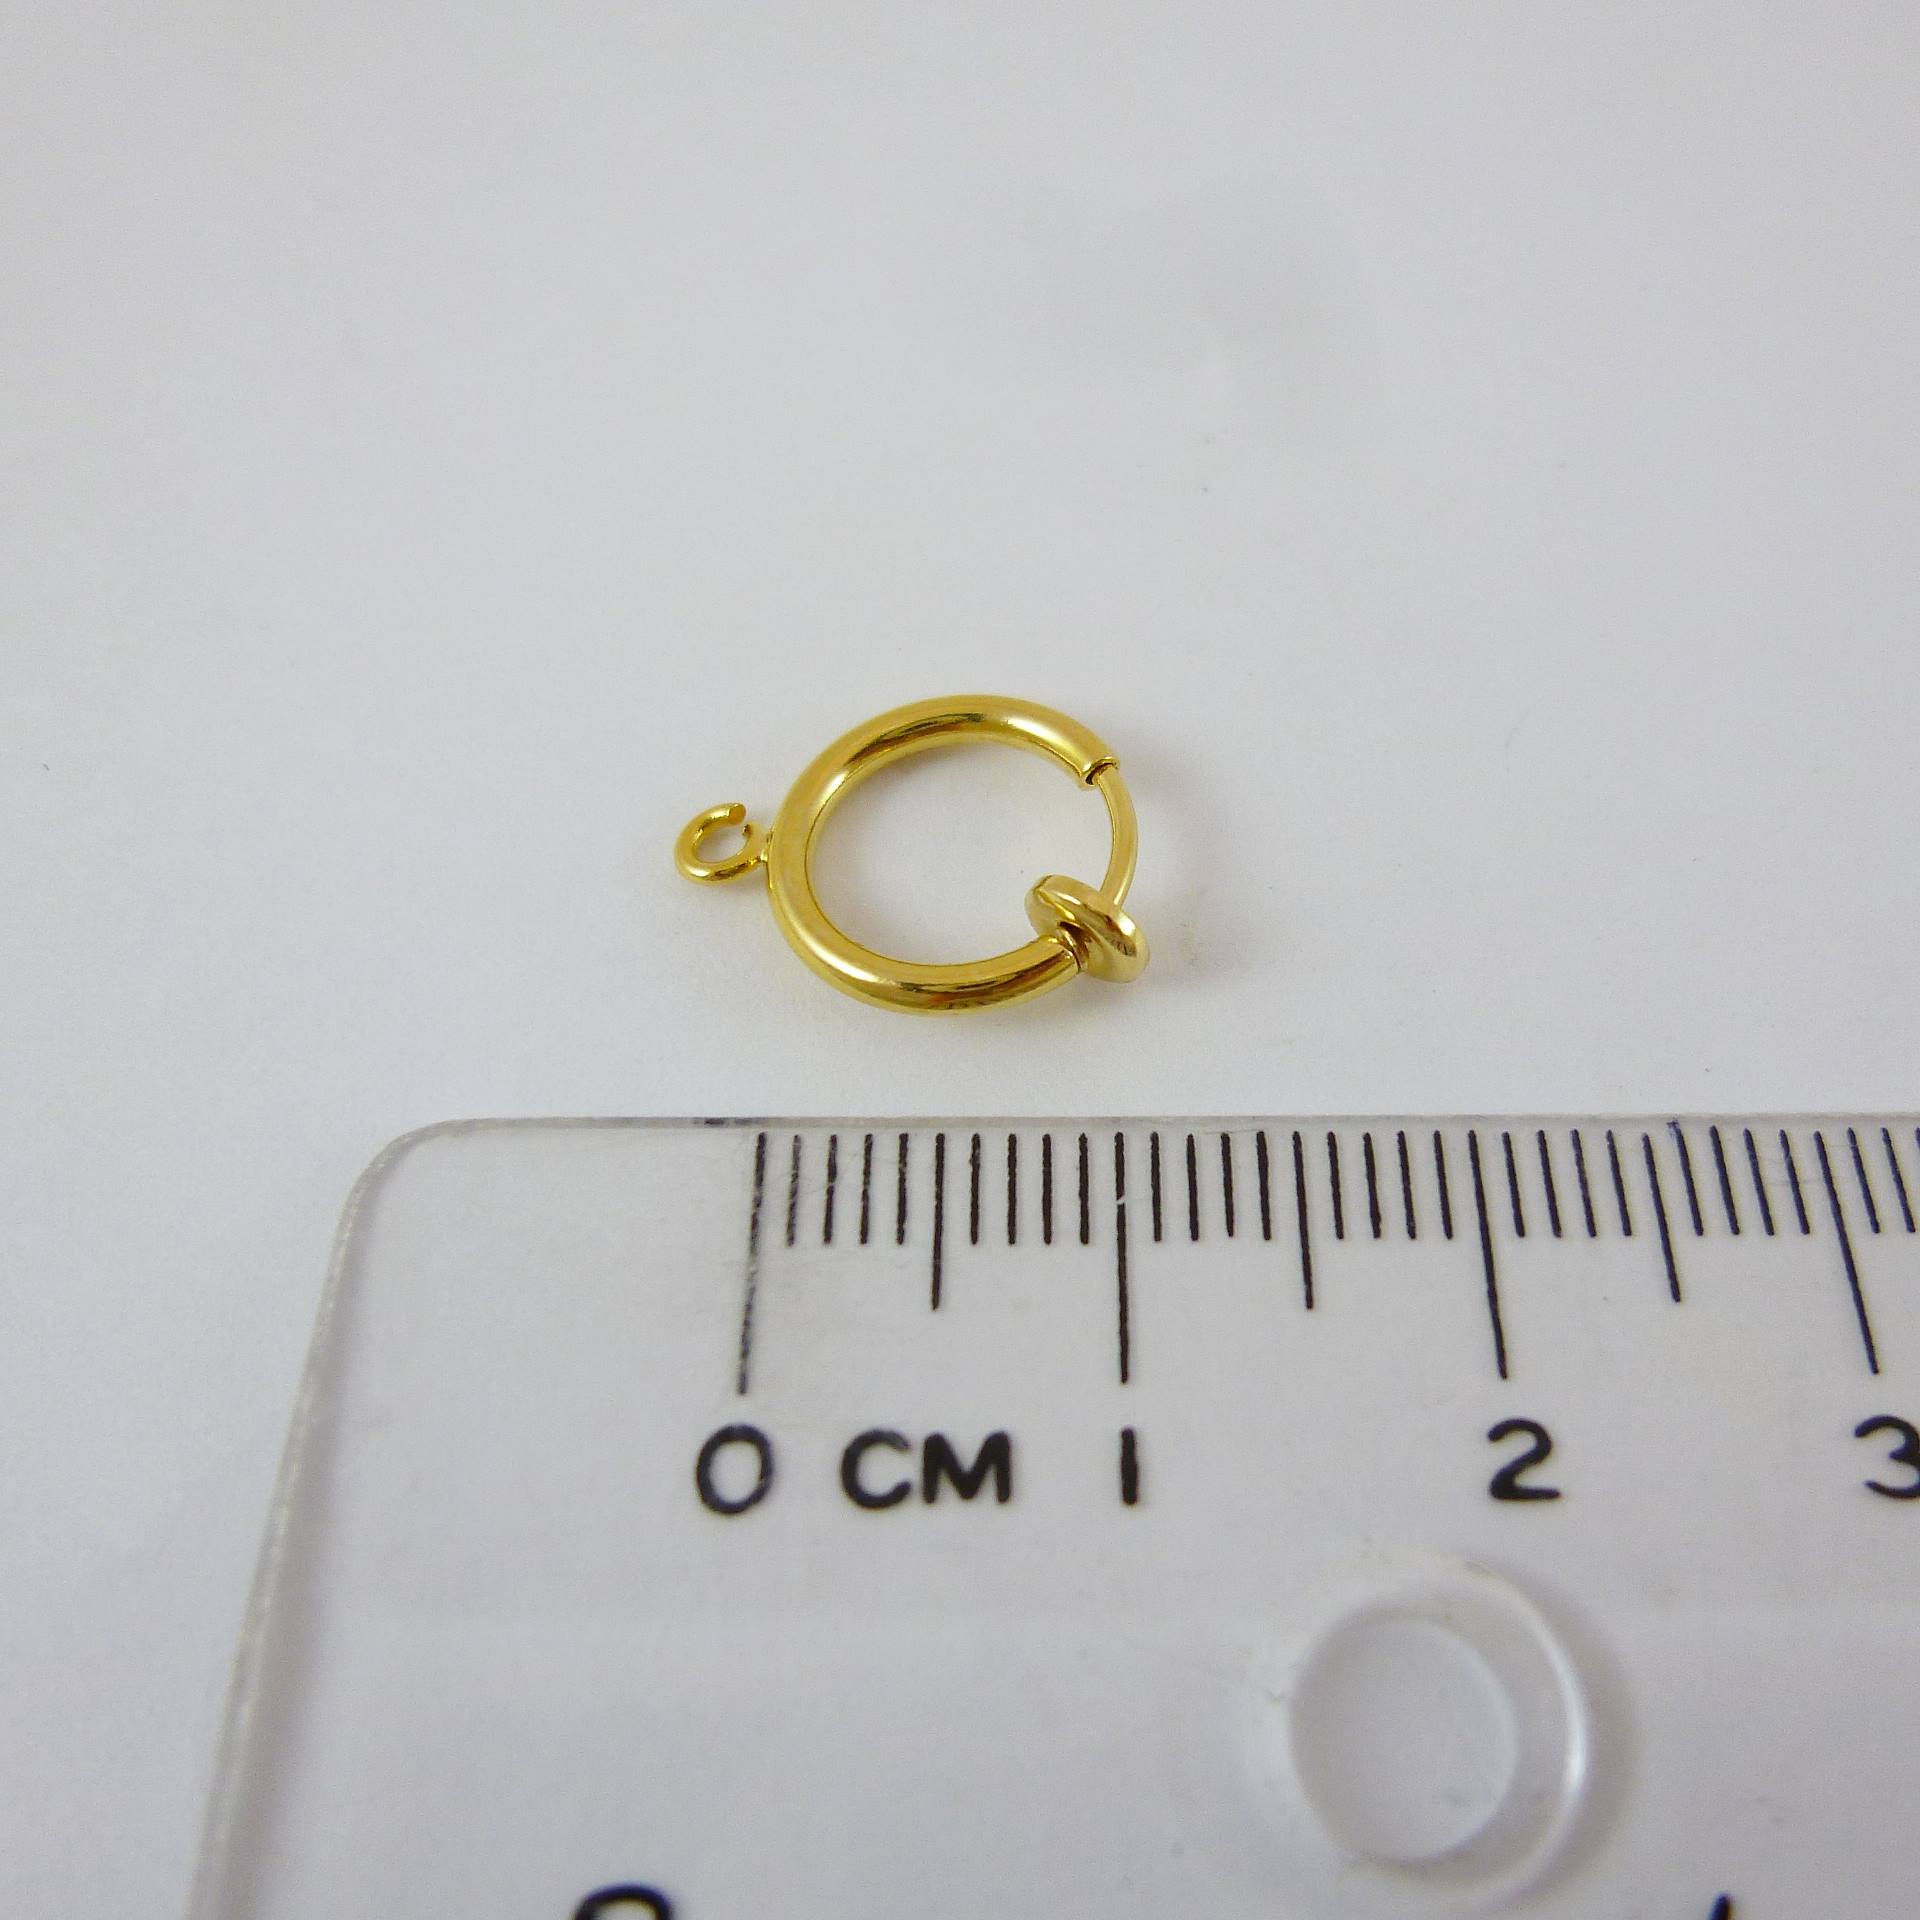 銅鍍金色圓形彈簧耳夾圈-10mm